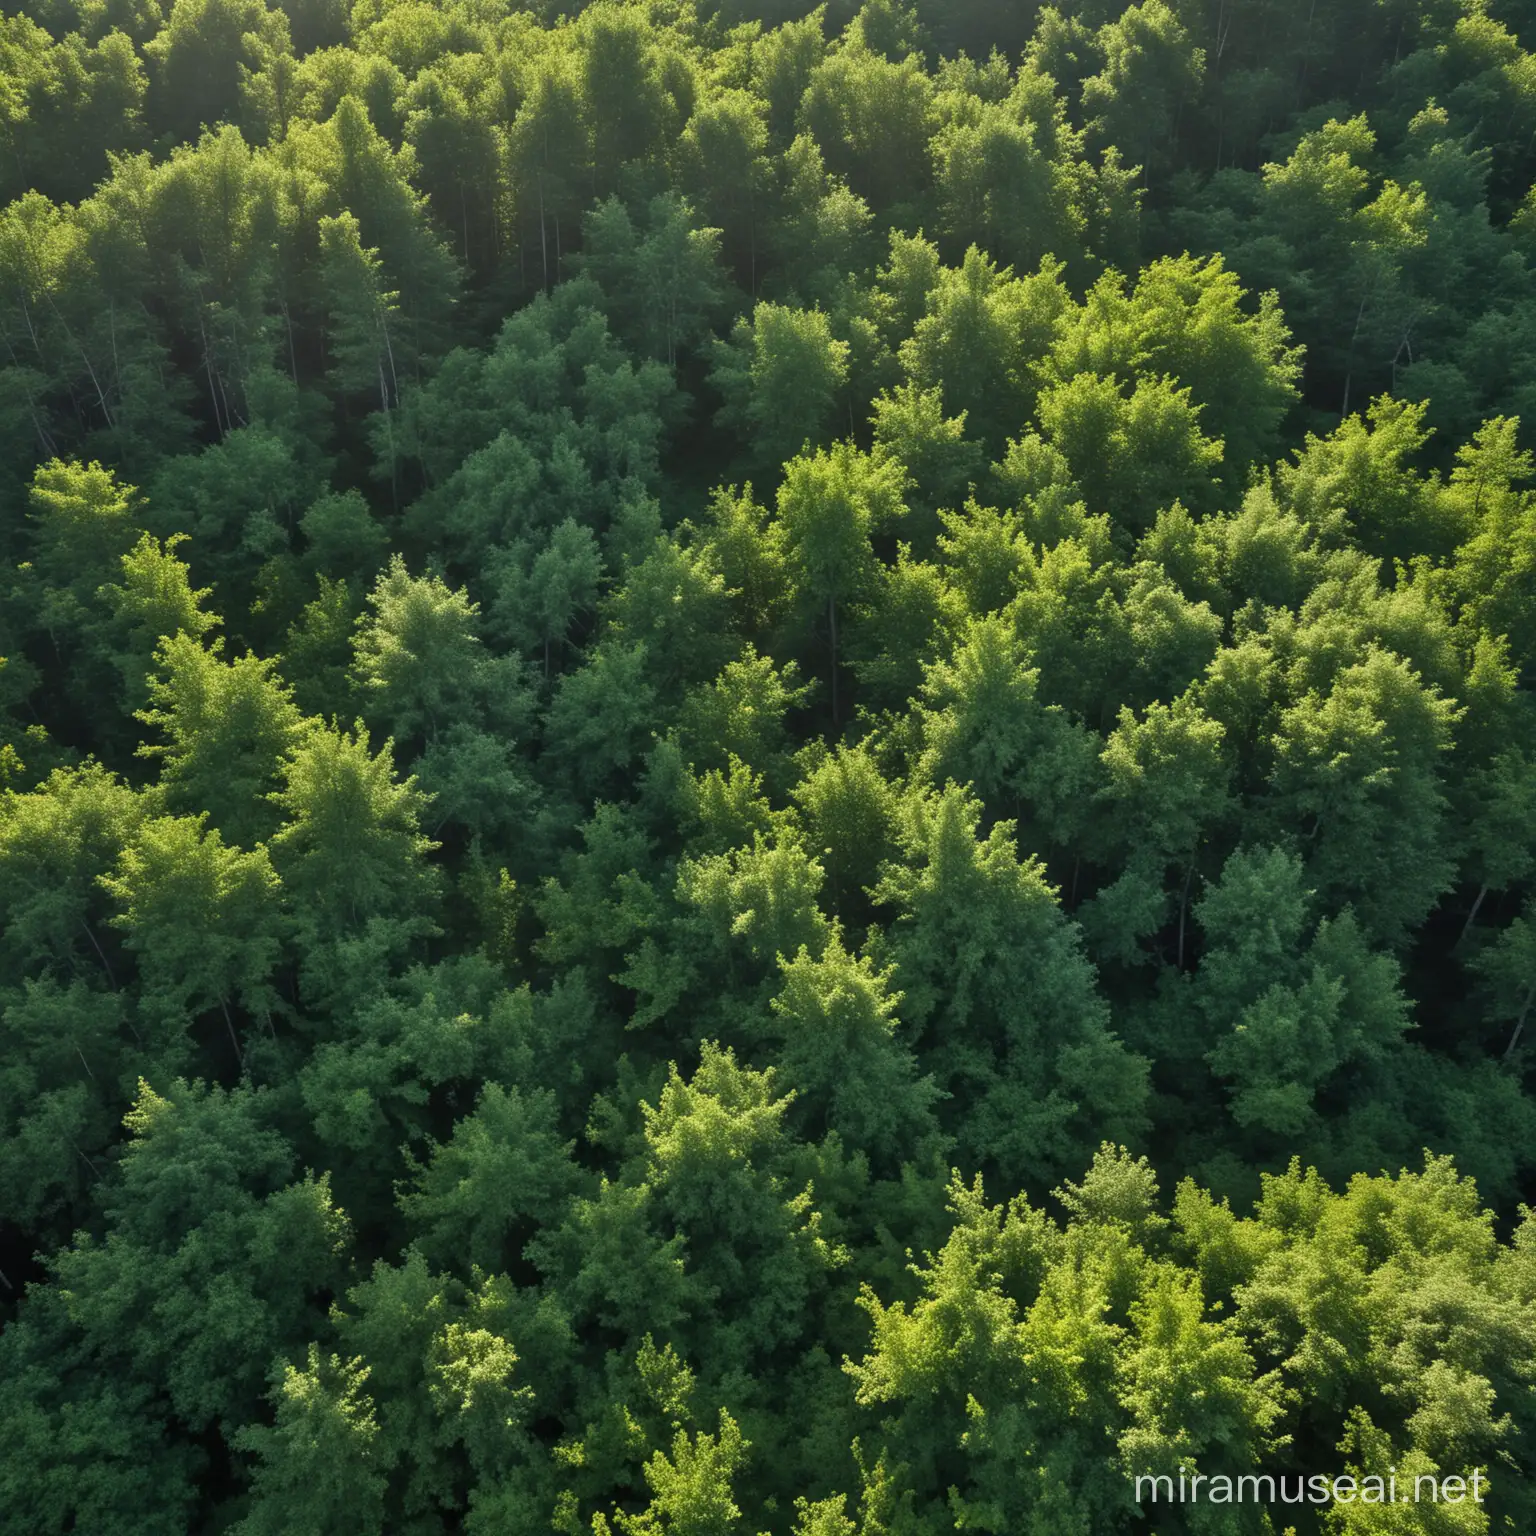 Grüner Wald, Ansicht von leicht oben, Sonne erleuchtet die Blätter